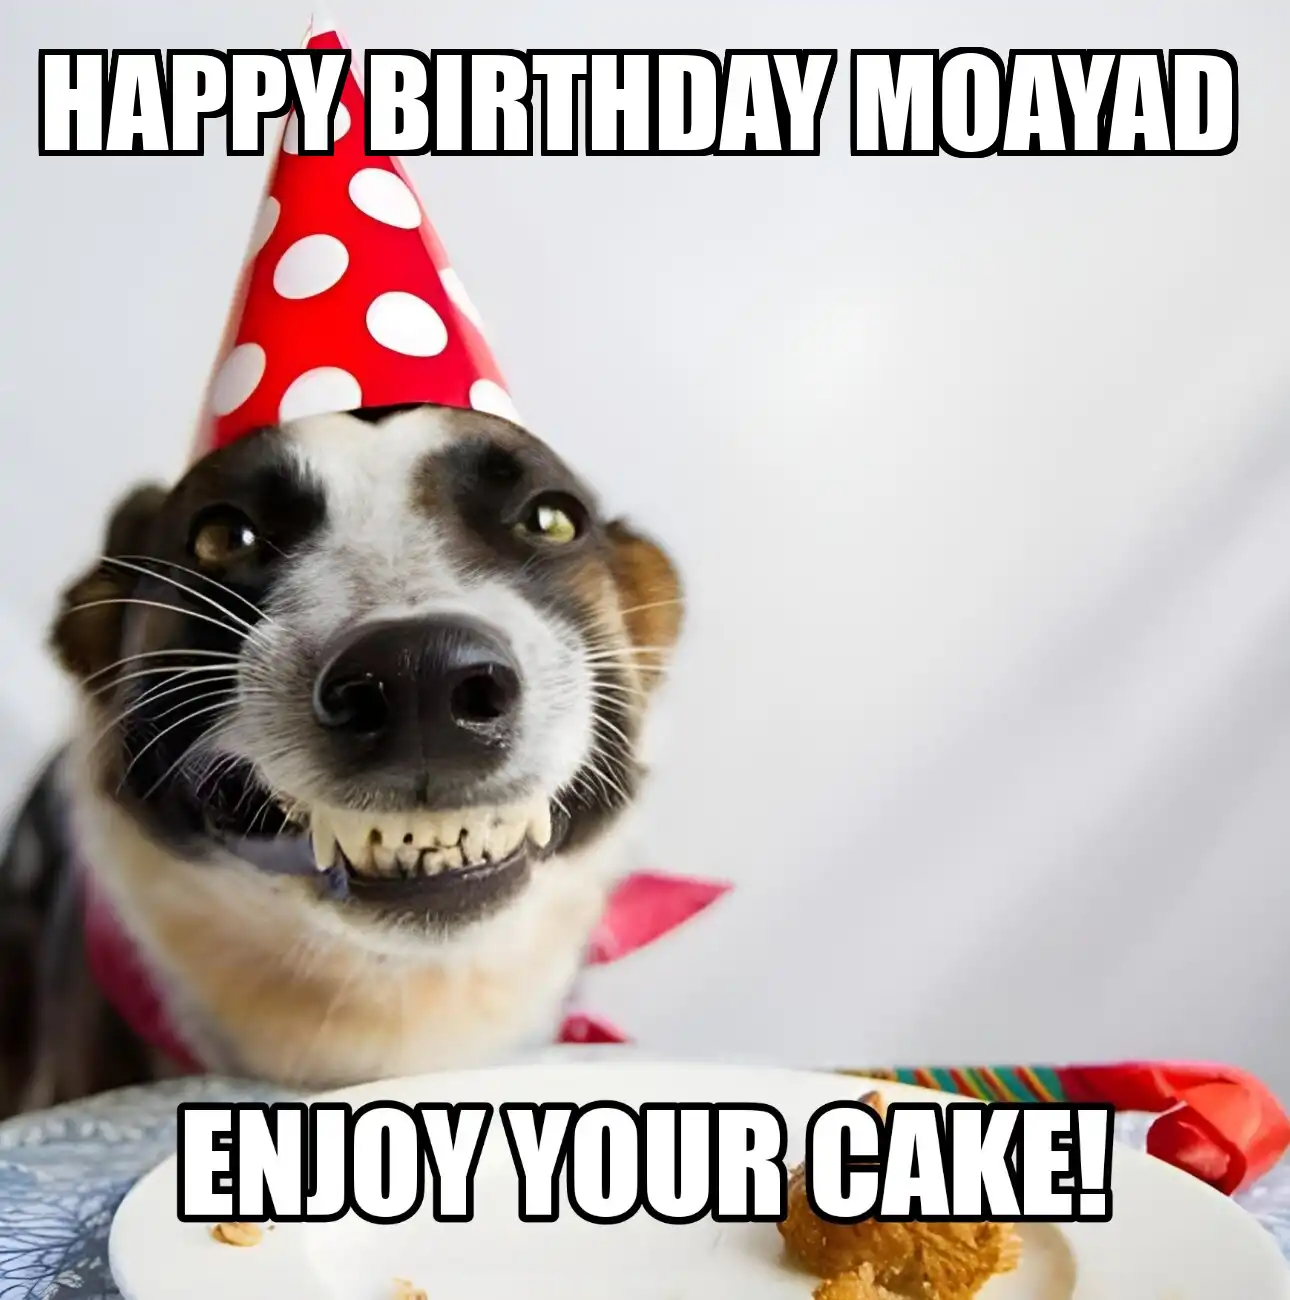 Happy Birthday Moayad Enjoy Your Cake Dog Meme